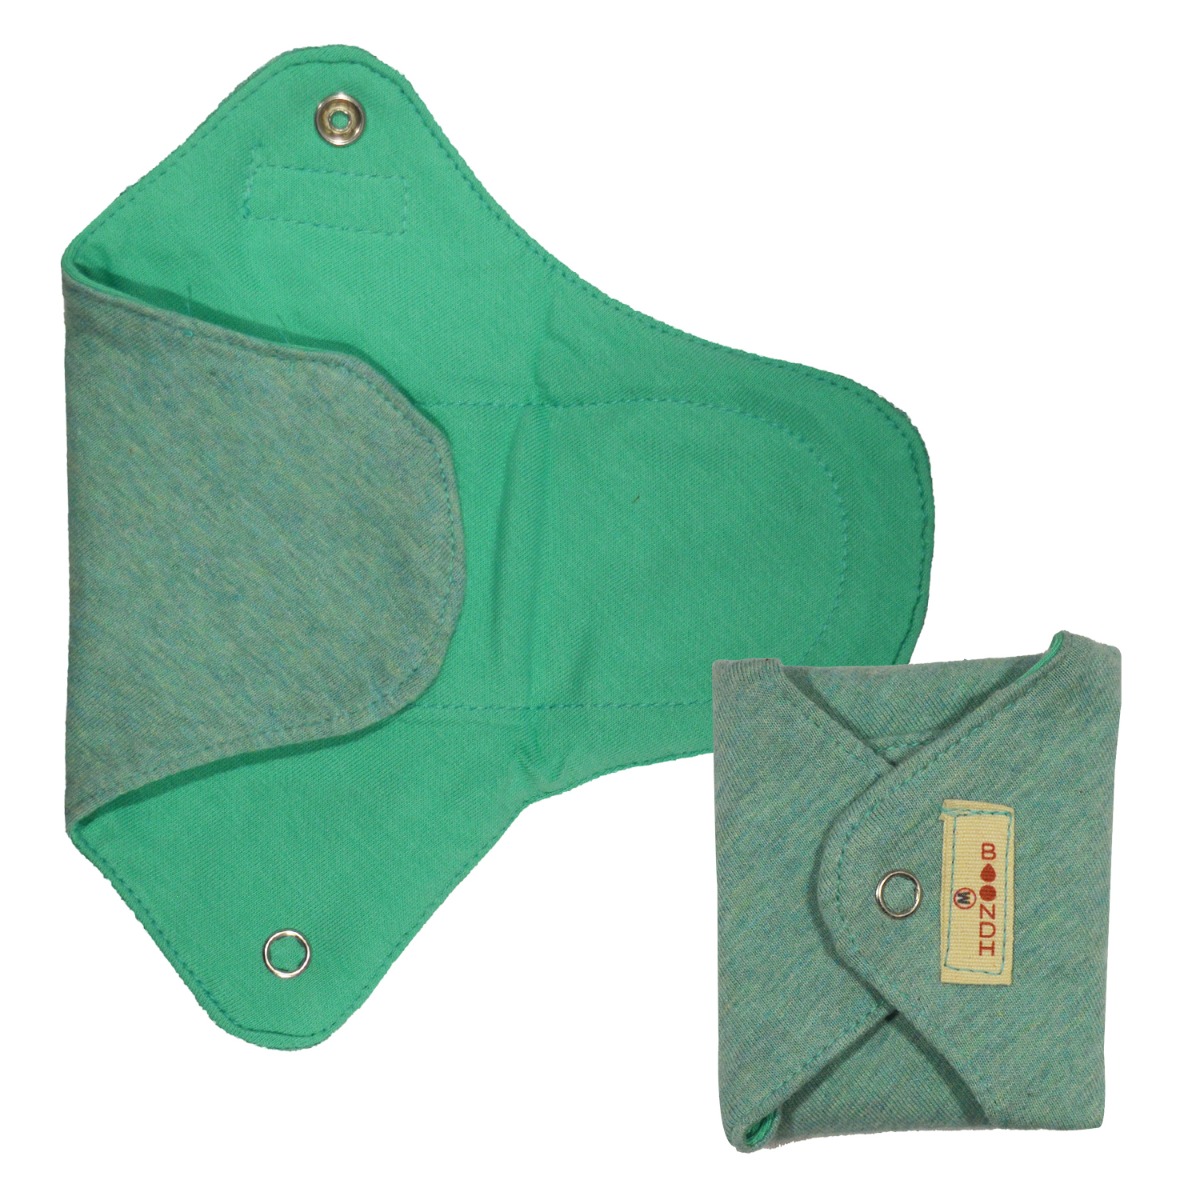 Boondh Cloth Pad: Medium Size - Aqua Teal